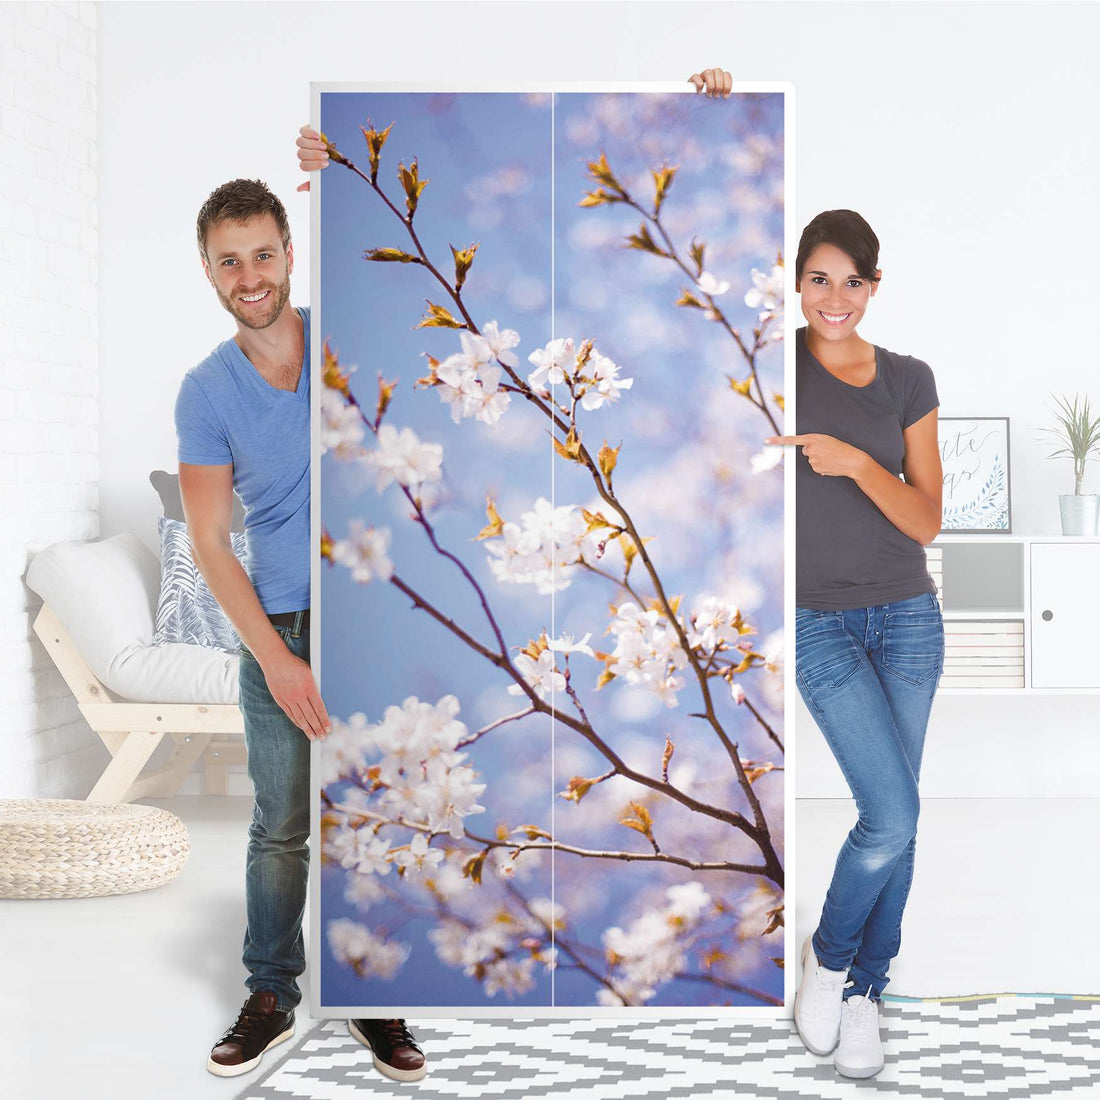 Klebefolie für Möbel Apple Blossoms - IKEA Pax Schrank 201 cm Höhe - 2 Türen - Folie